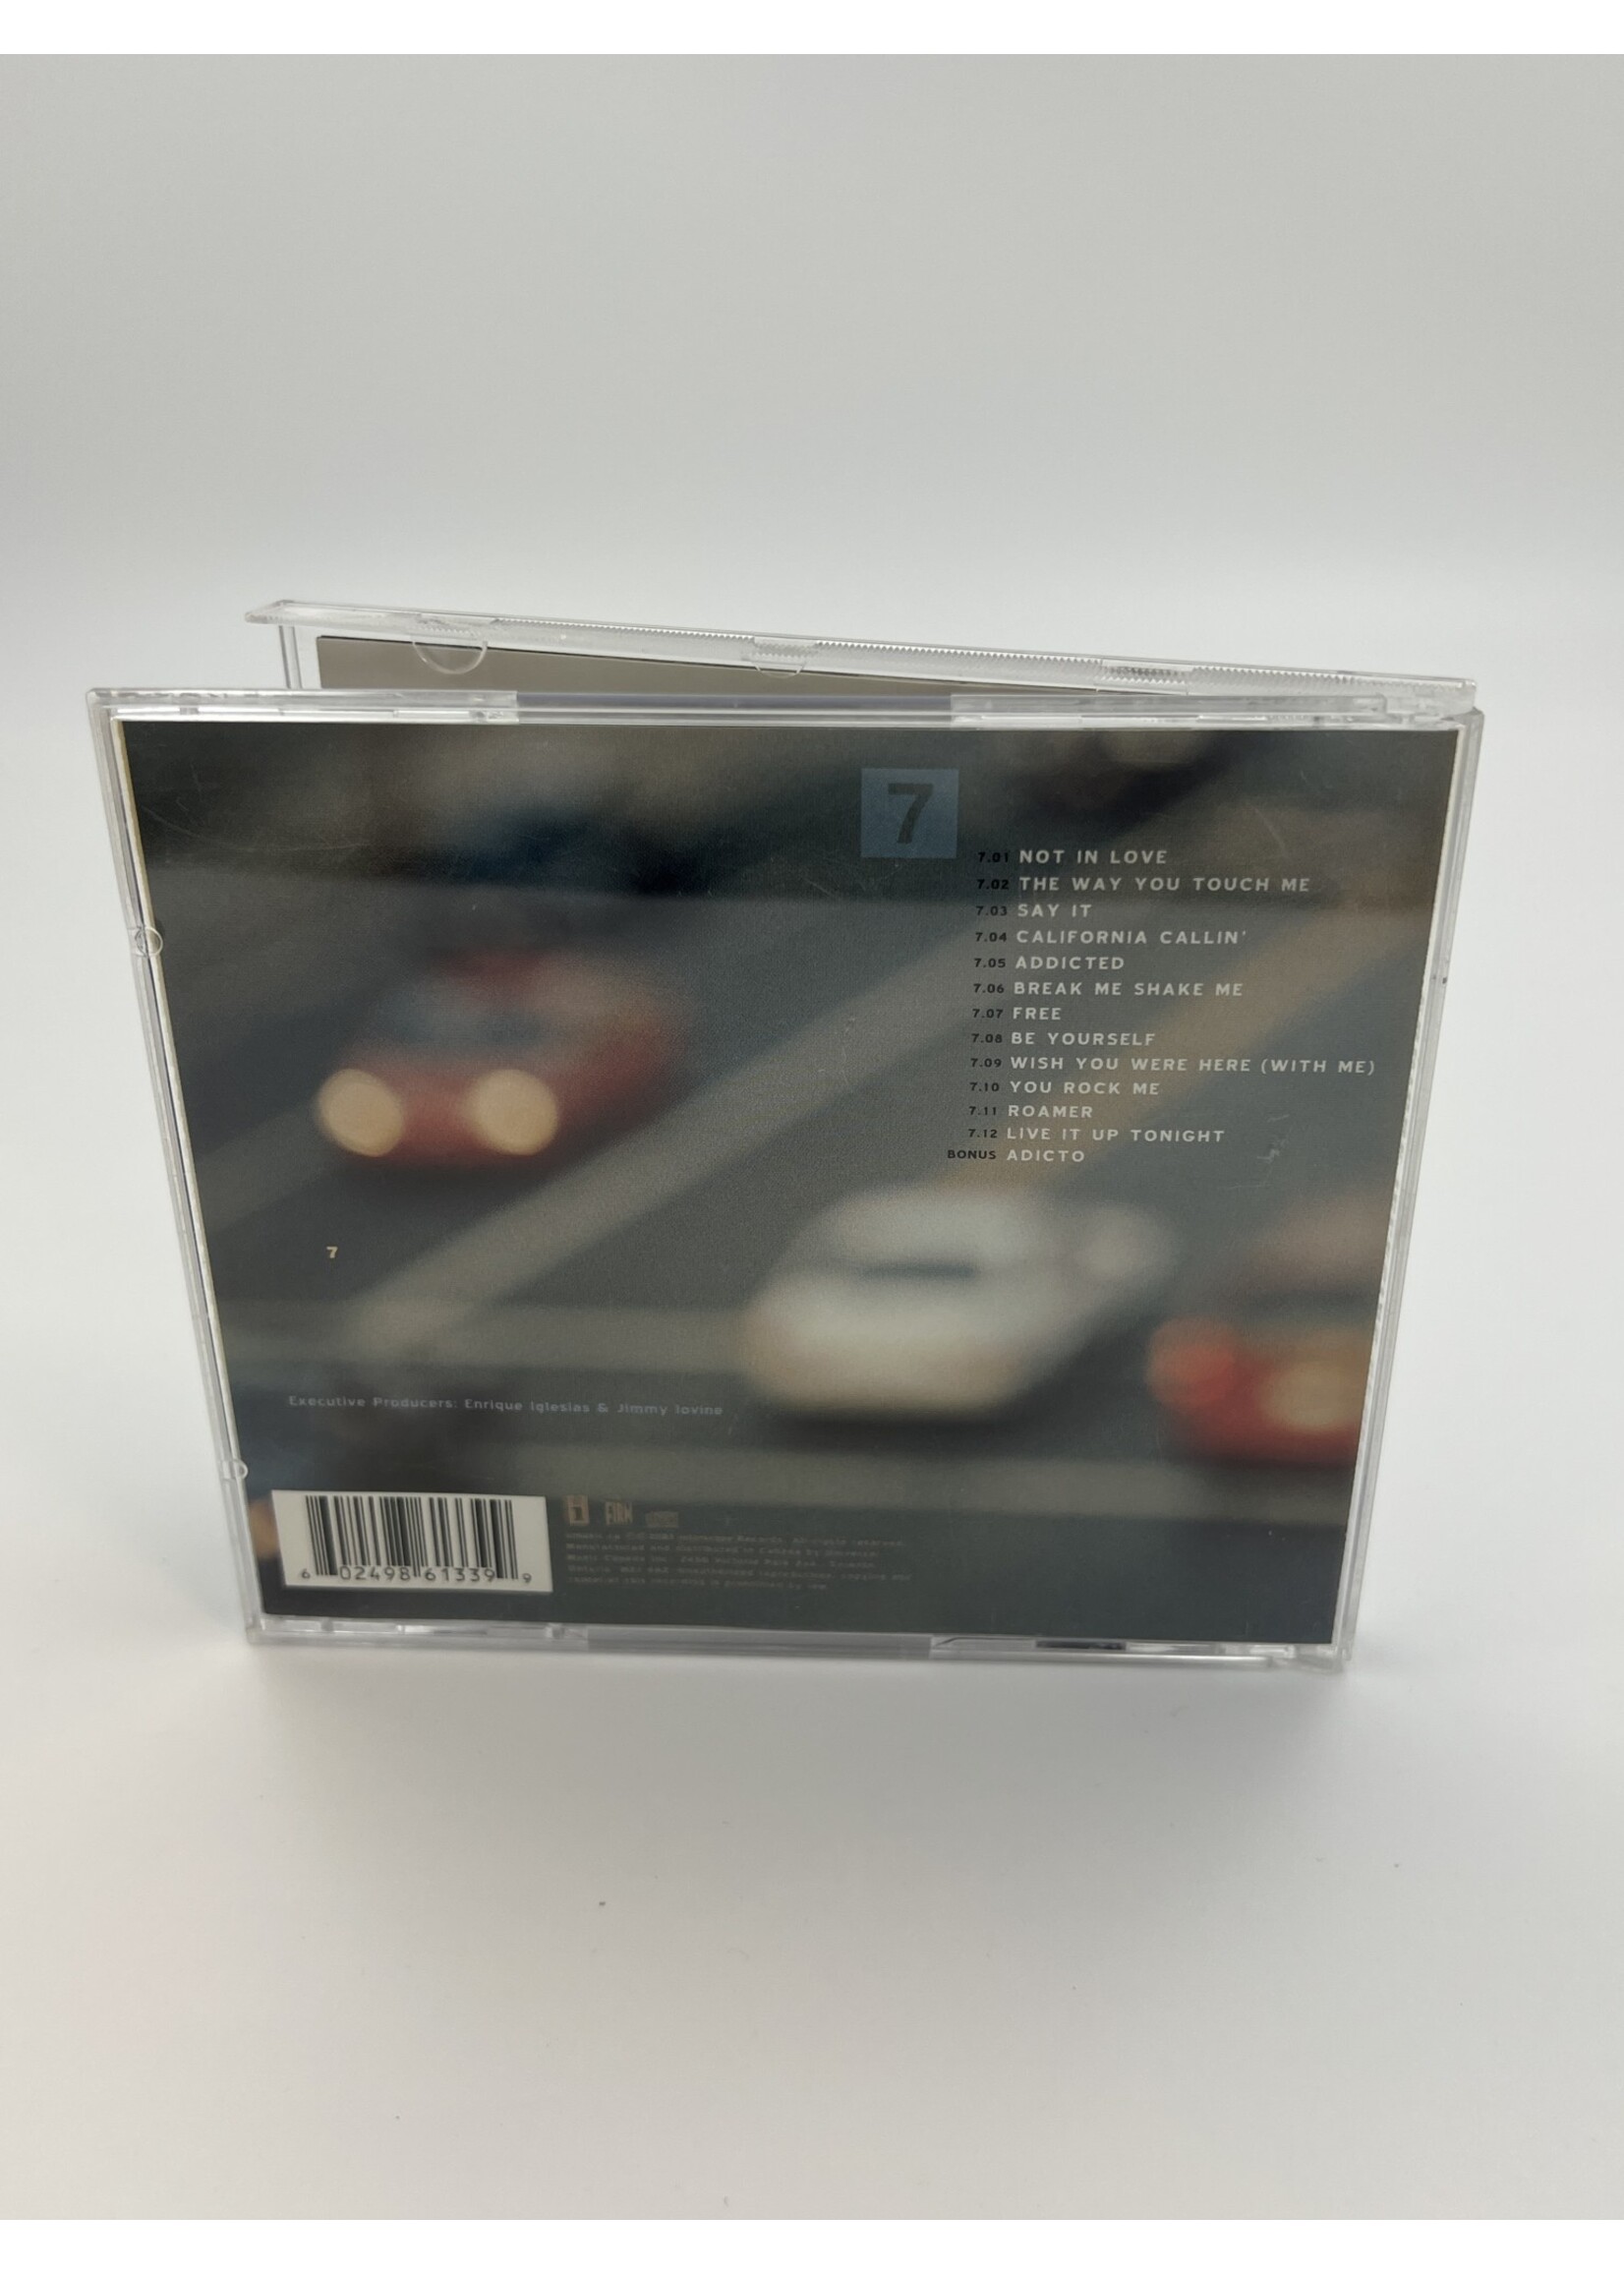 CD Enrique Iglesias Seven CD